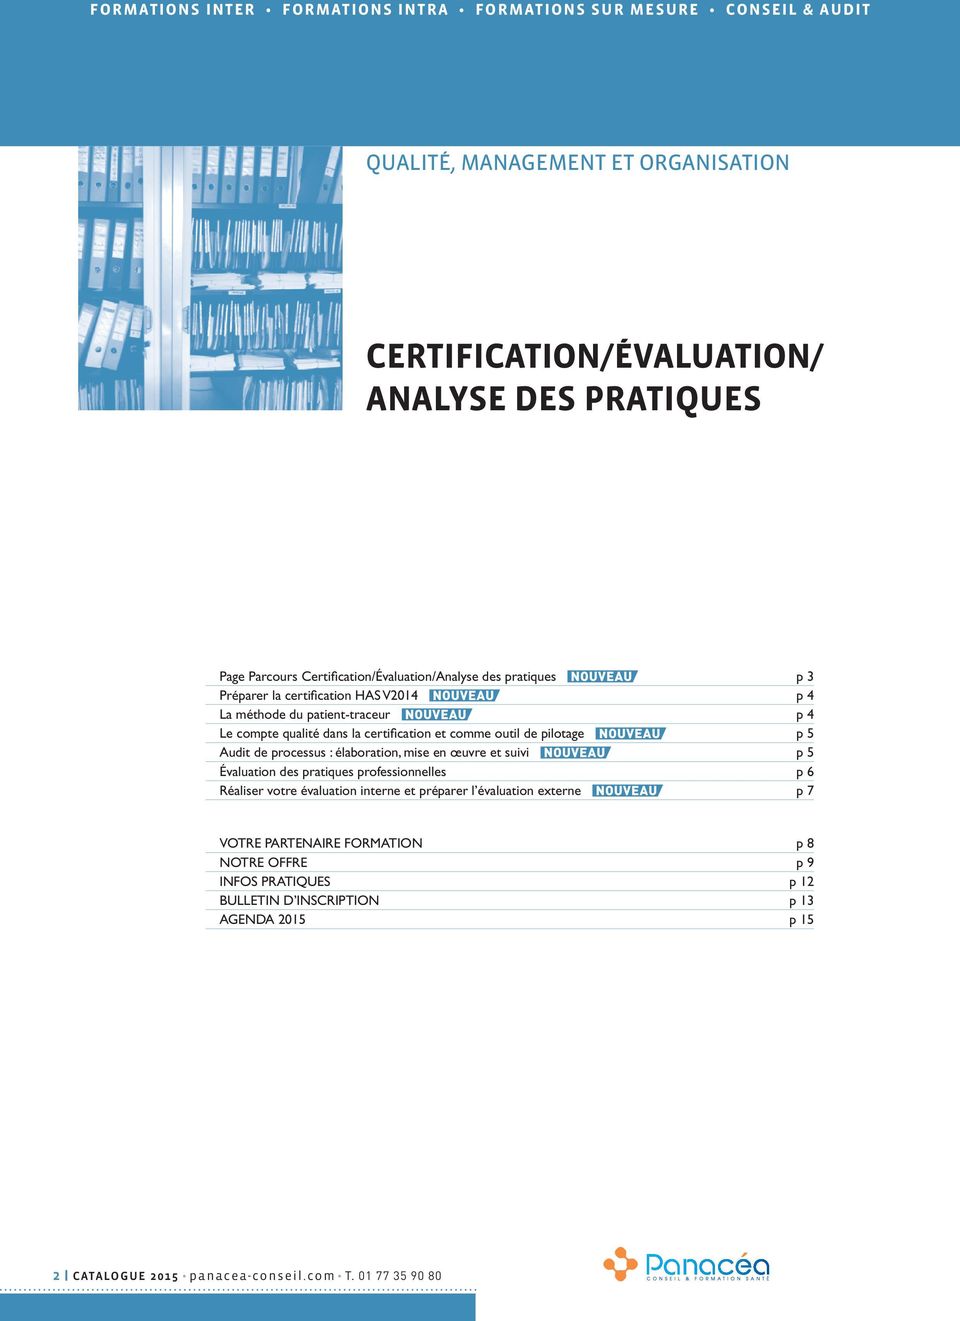 qualité dans la certification et comme outil de pilotage p 5 Audit de processus : élaboration, mise en œuvre et suivi p 5 Évaluation des pratiques professionnelles p 6 Réaliser votre évaluation